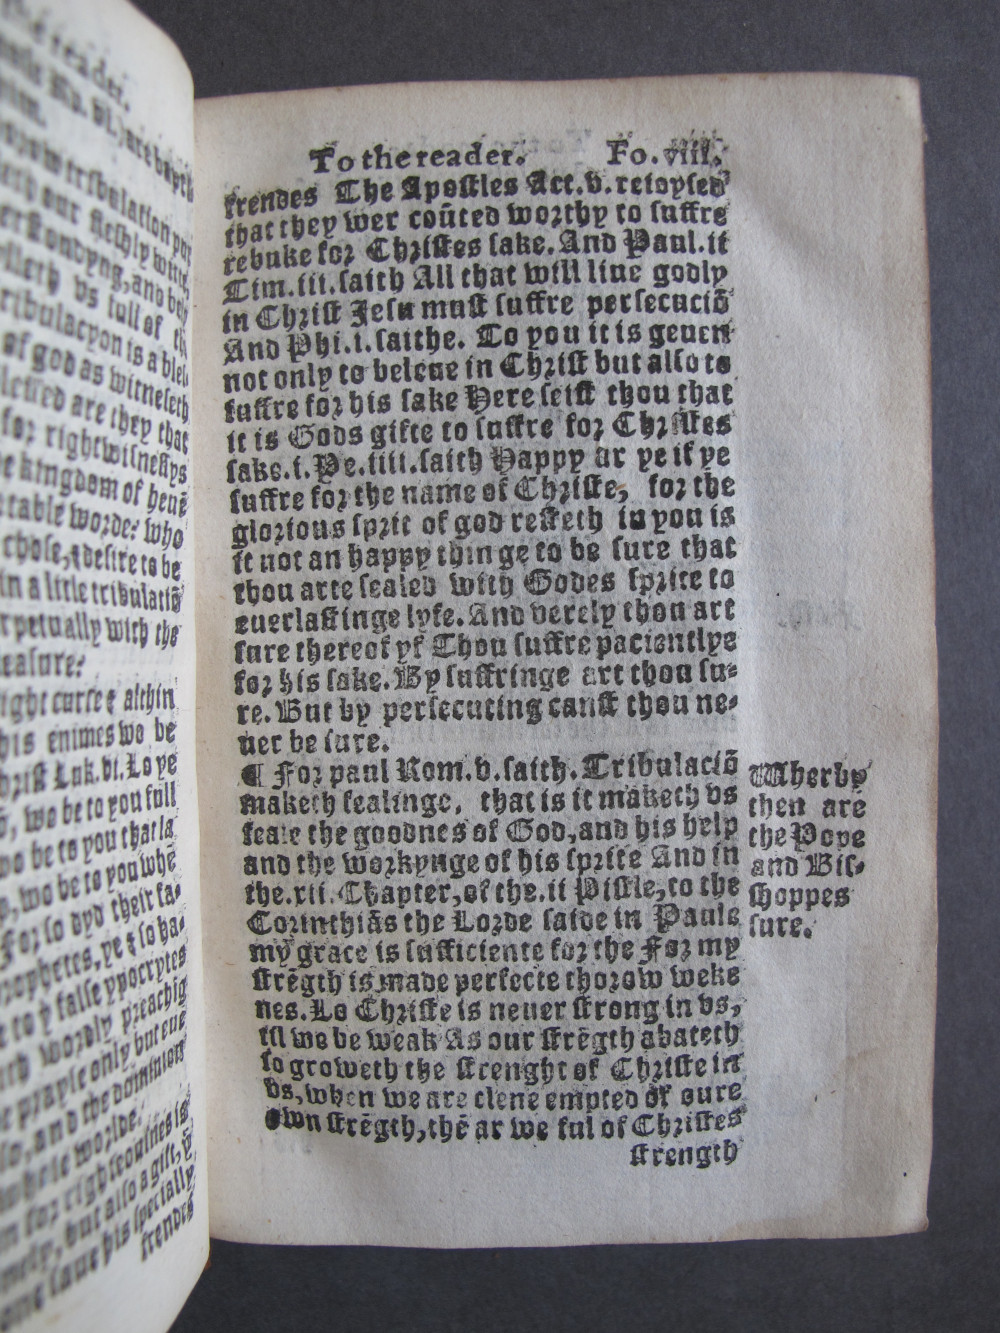 1 Folio A8 recto